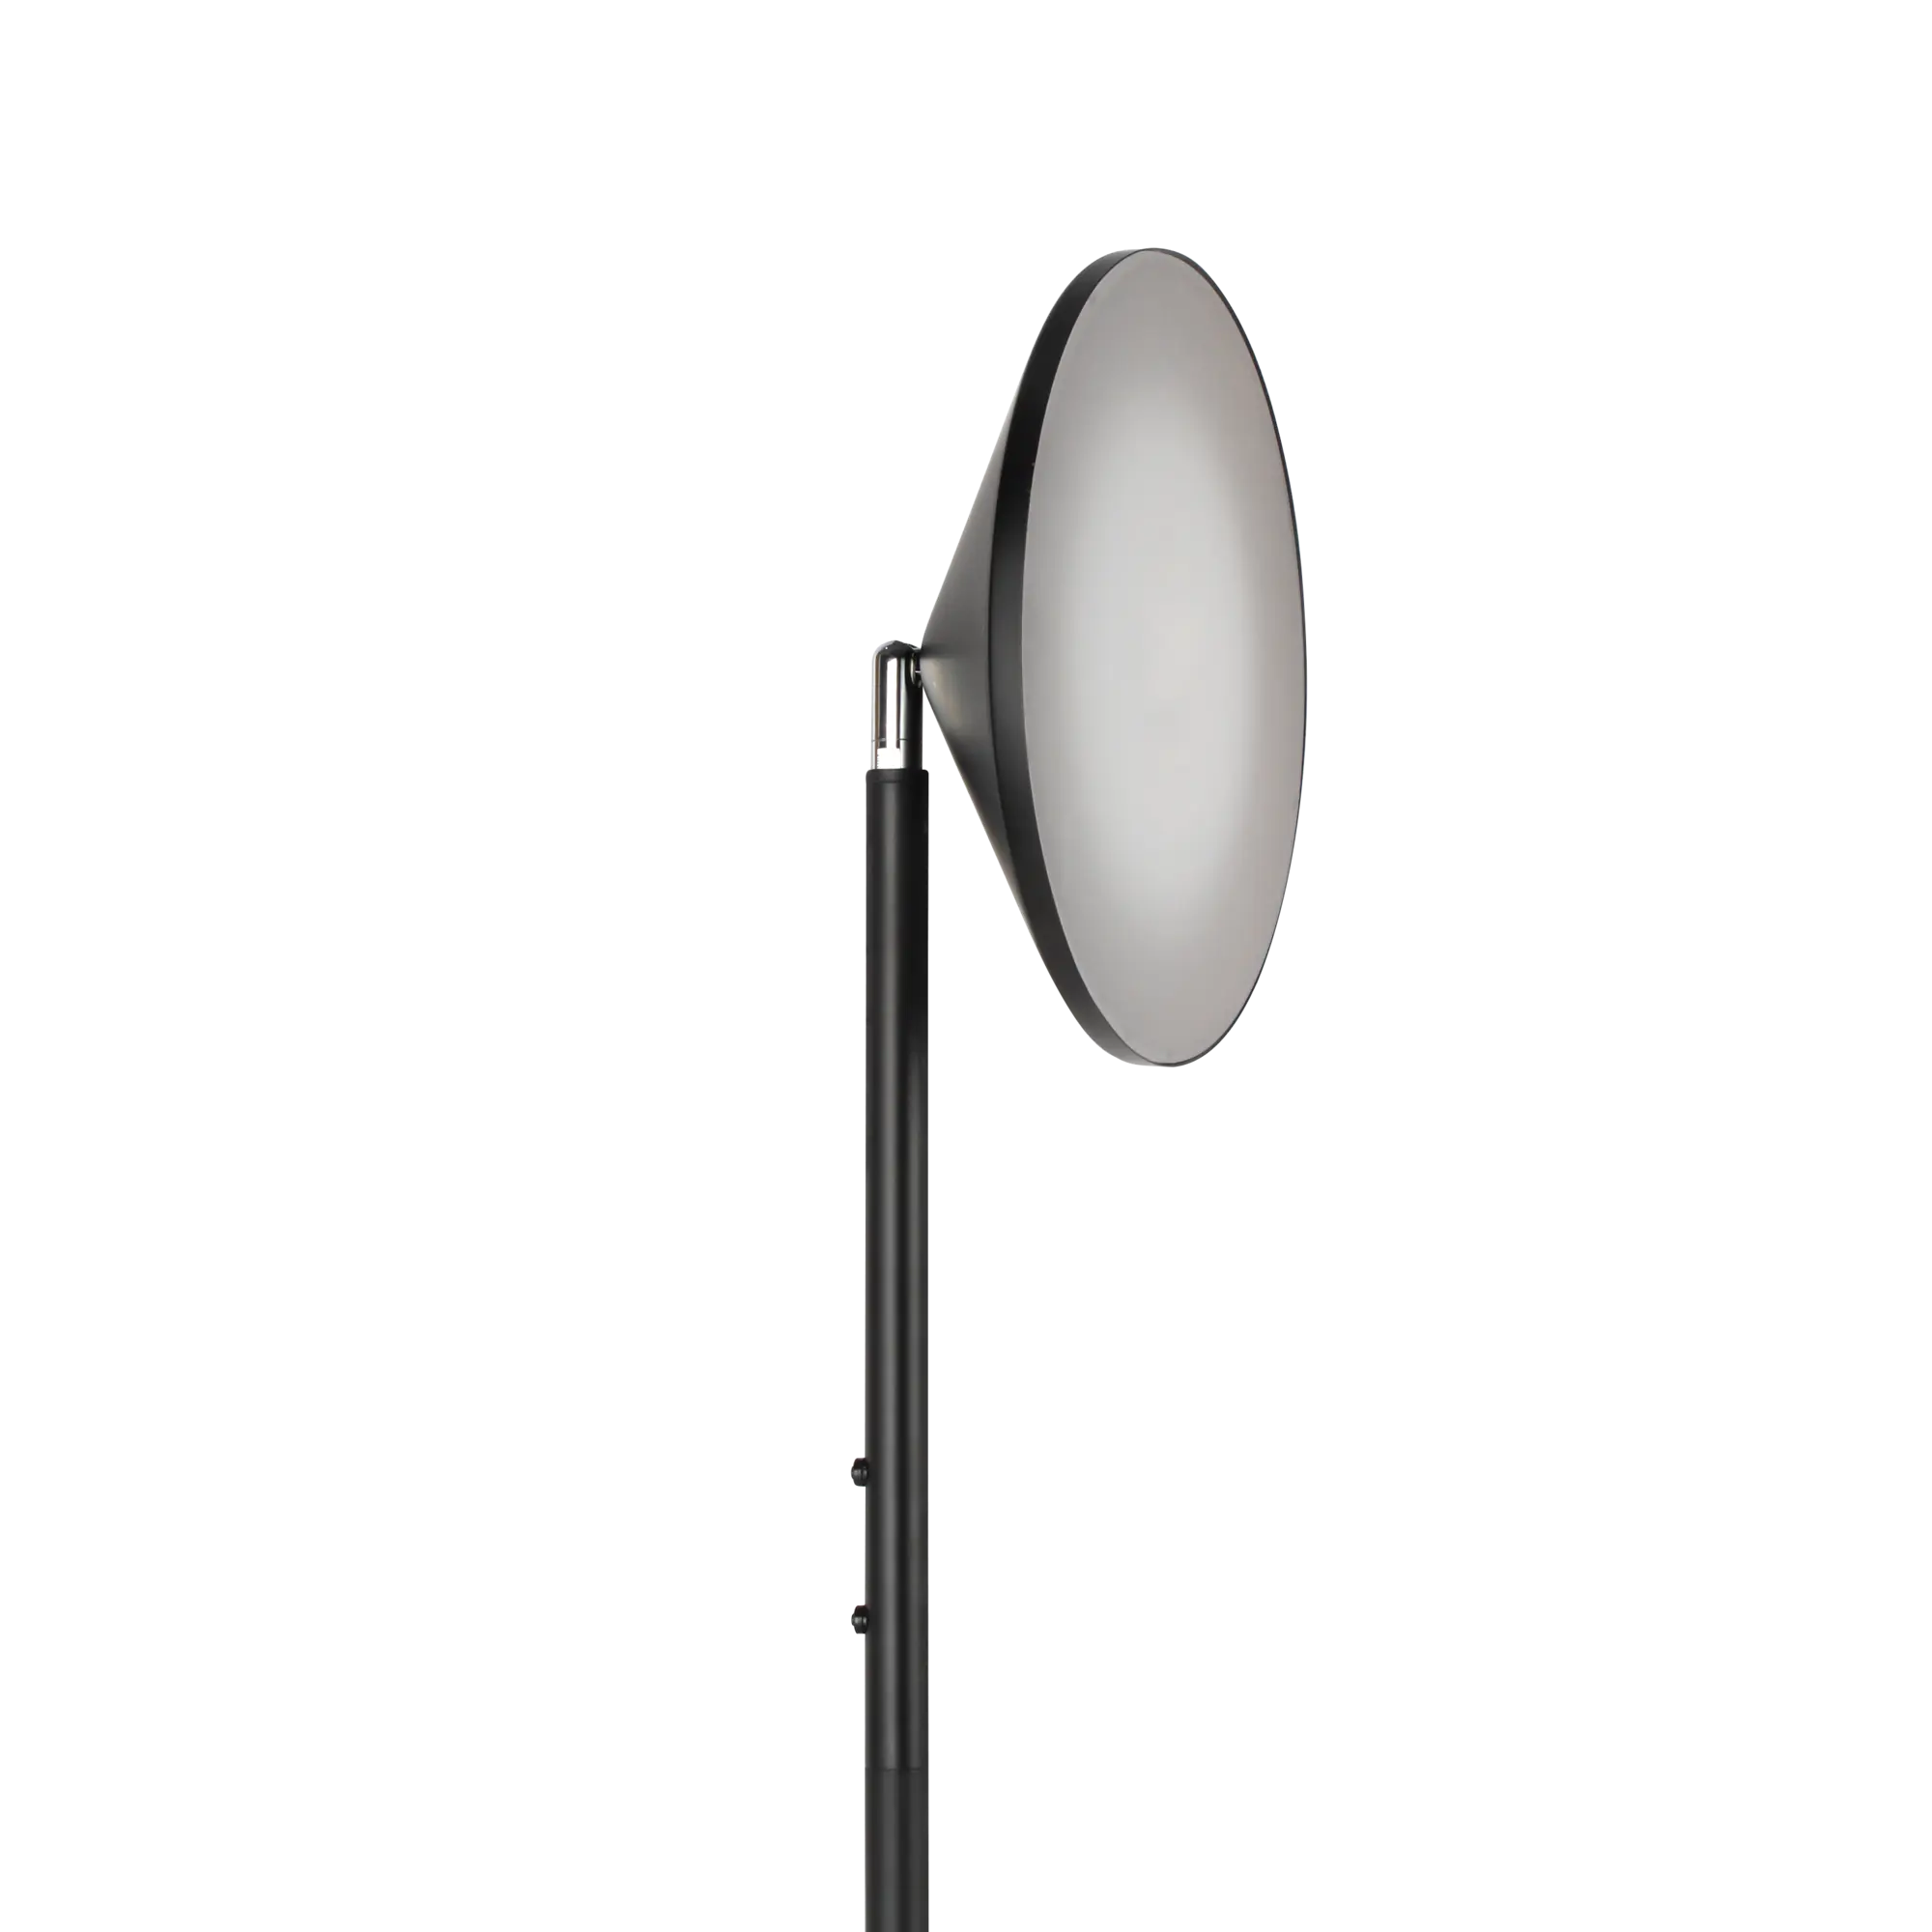 Lampadaire LED, droit, design, INSPIRE 1960 lm, H.181 cm Mirasol